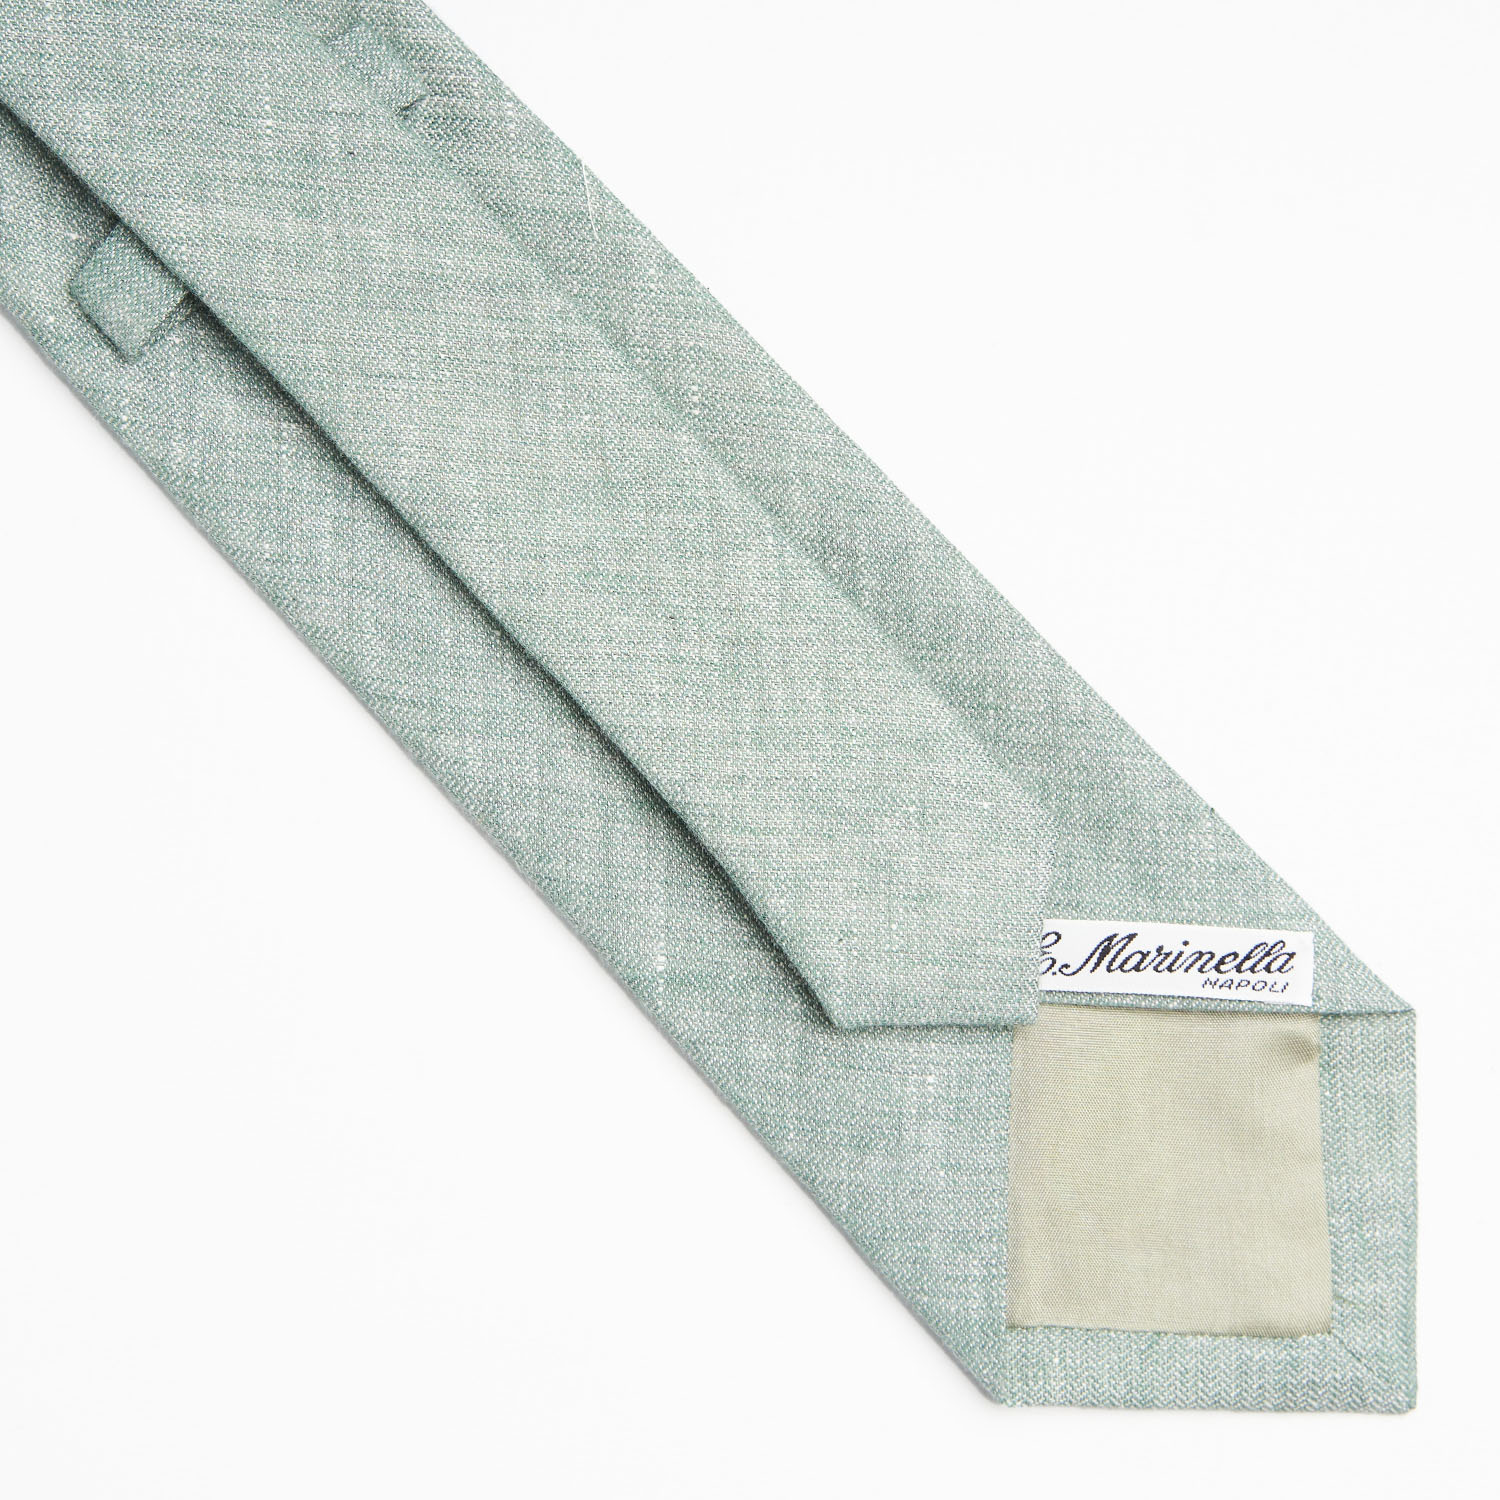 Linen and cotton tie _ cravatta in lino e cotone